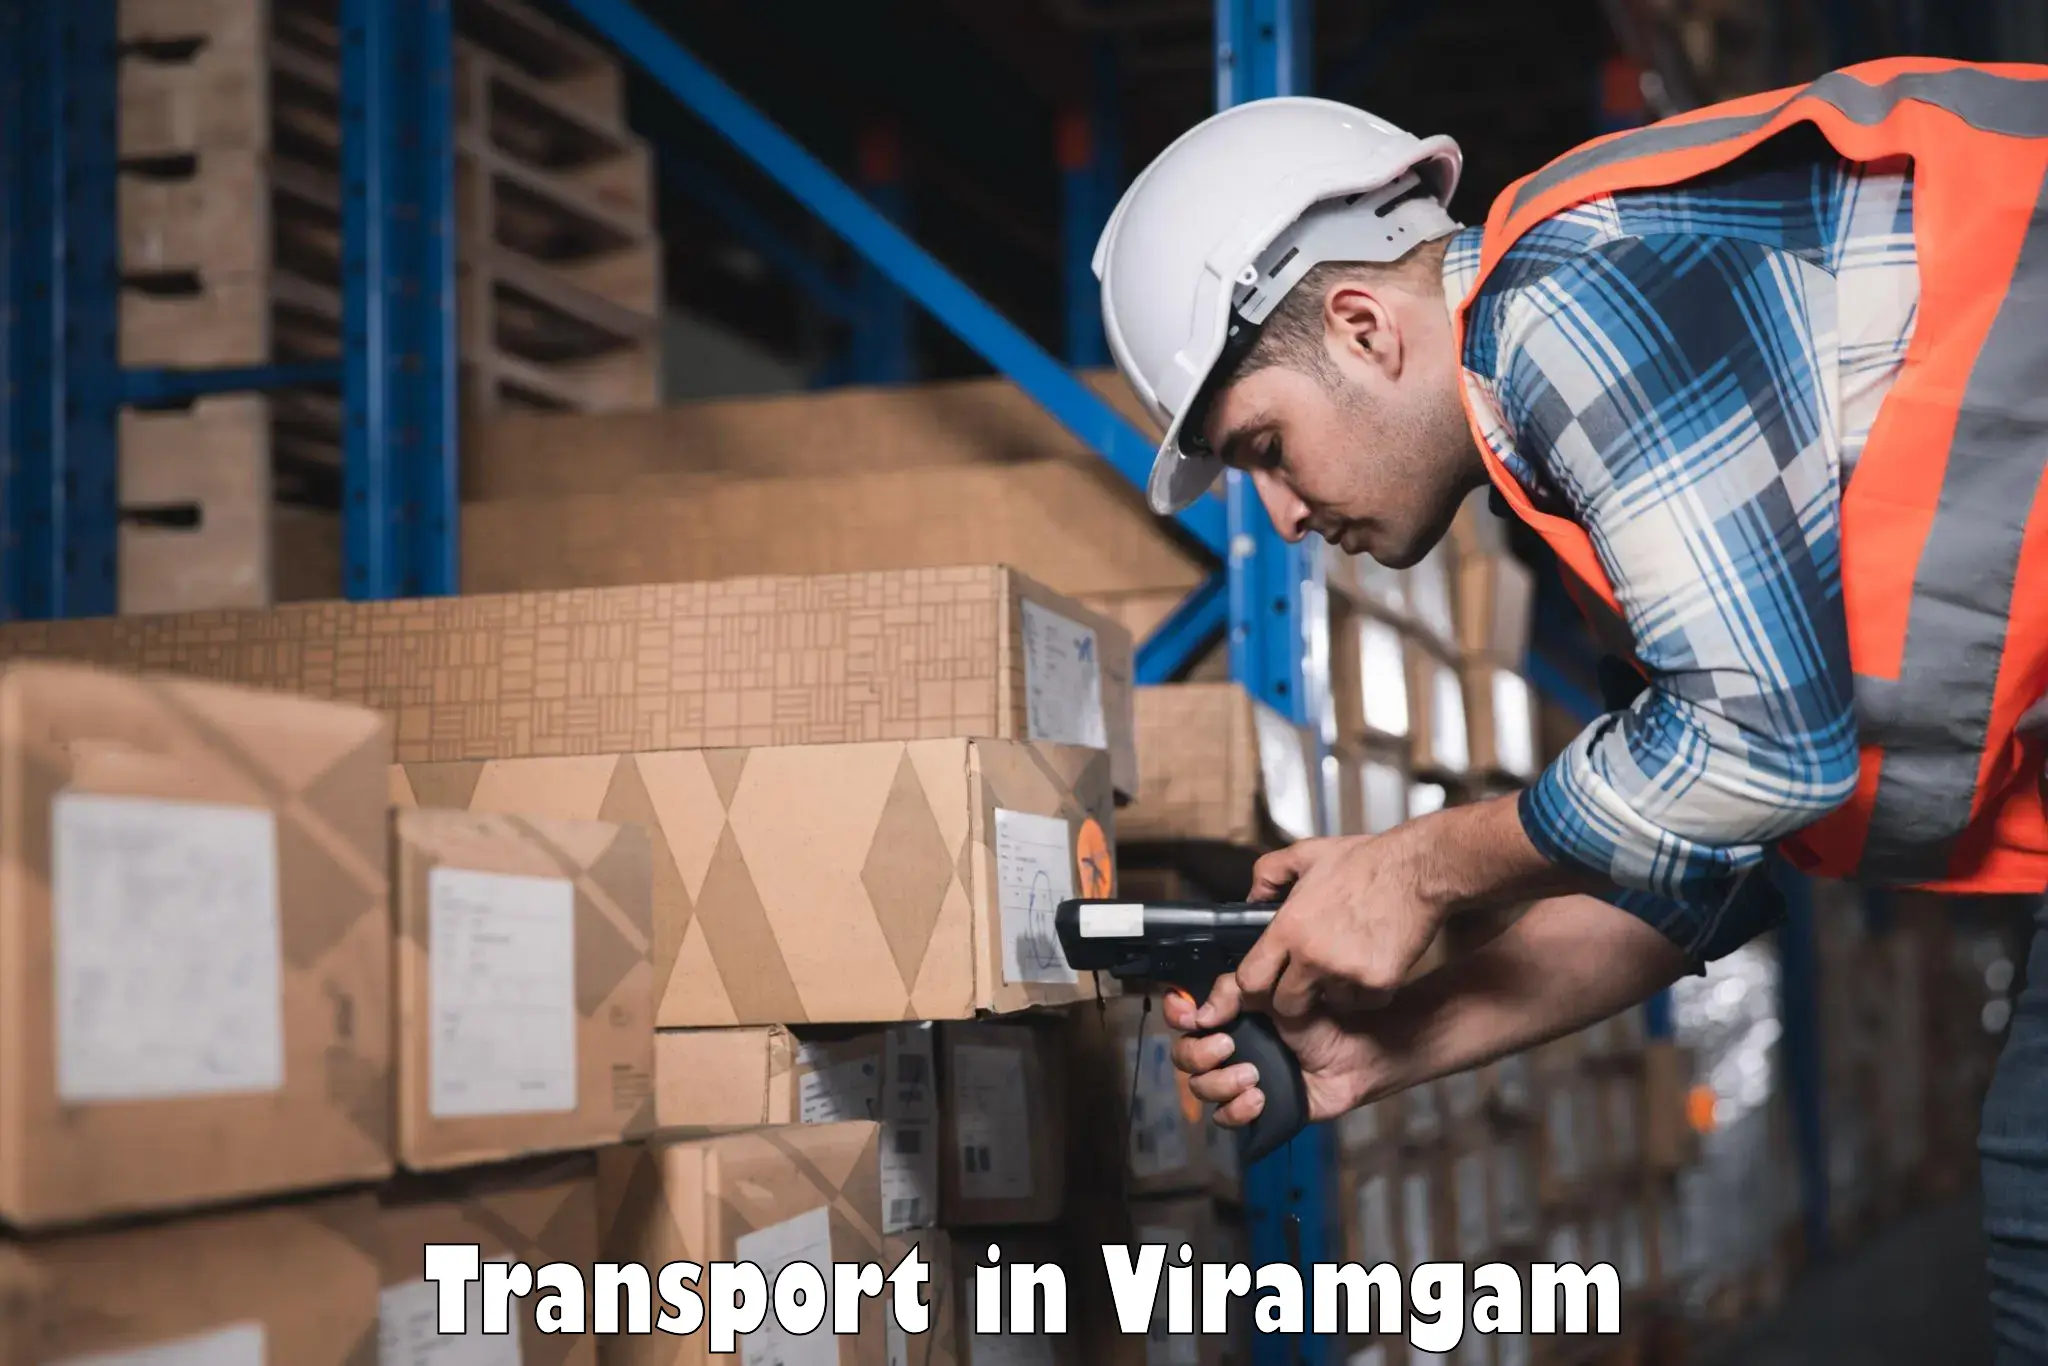 Transportation services in Viramgam